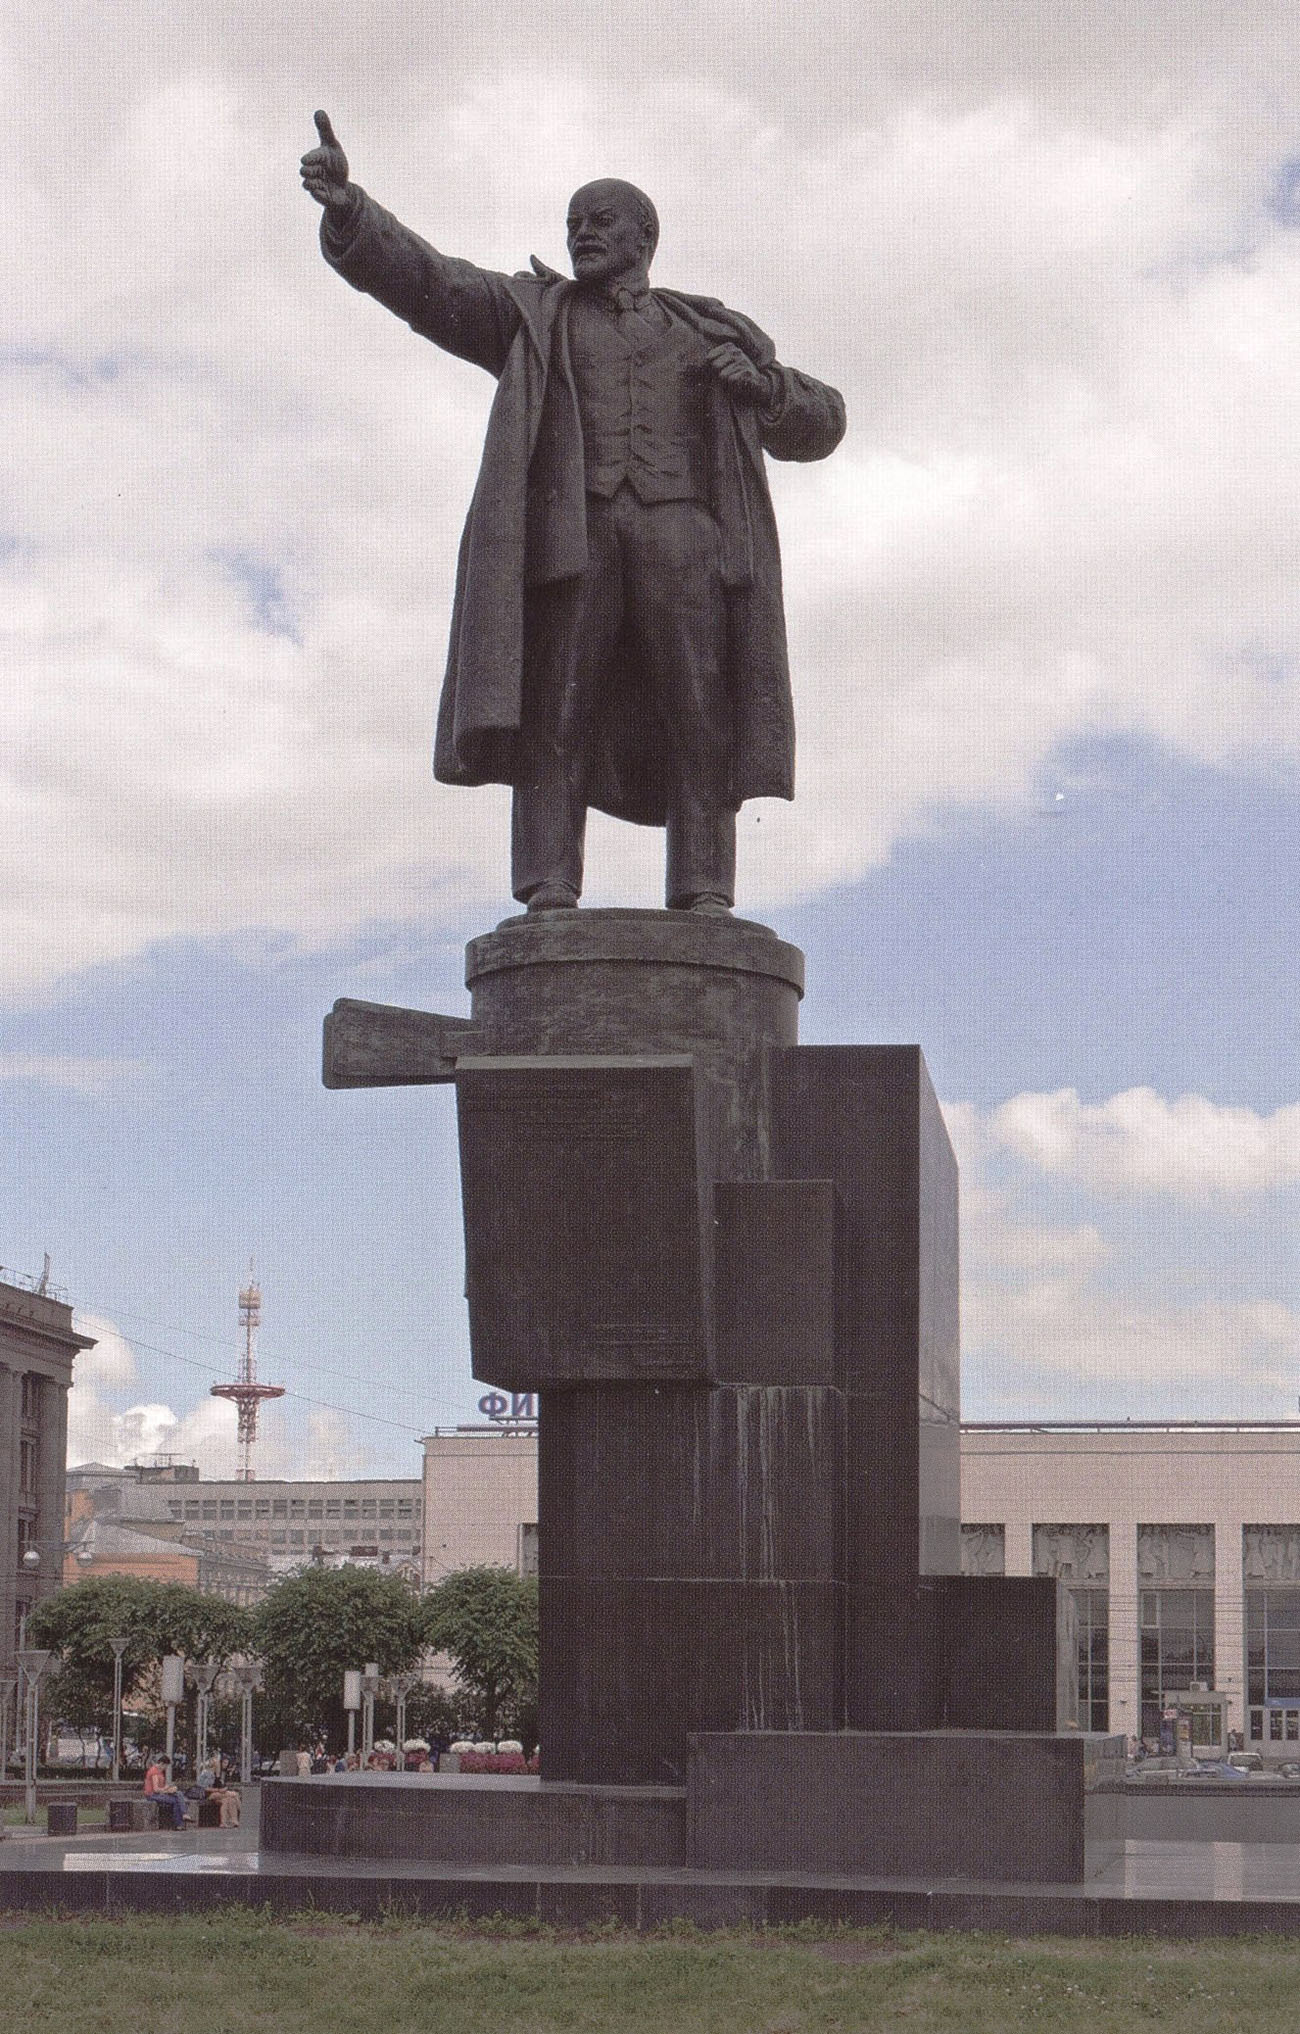 Сергей Евсеев, Владимир Щуко, Владимир Гельфрейх. "Ленин говорит с броневика". 1926.